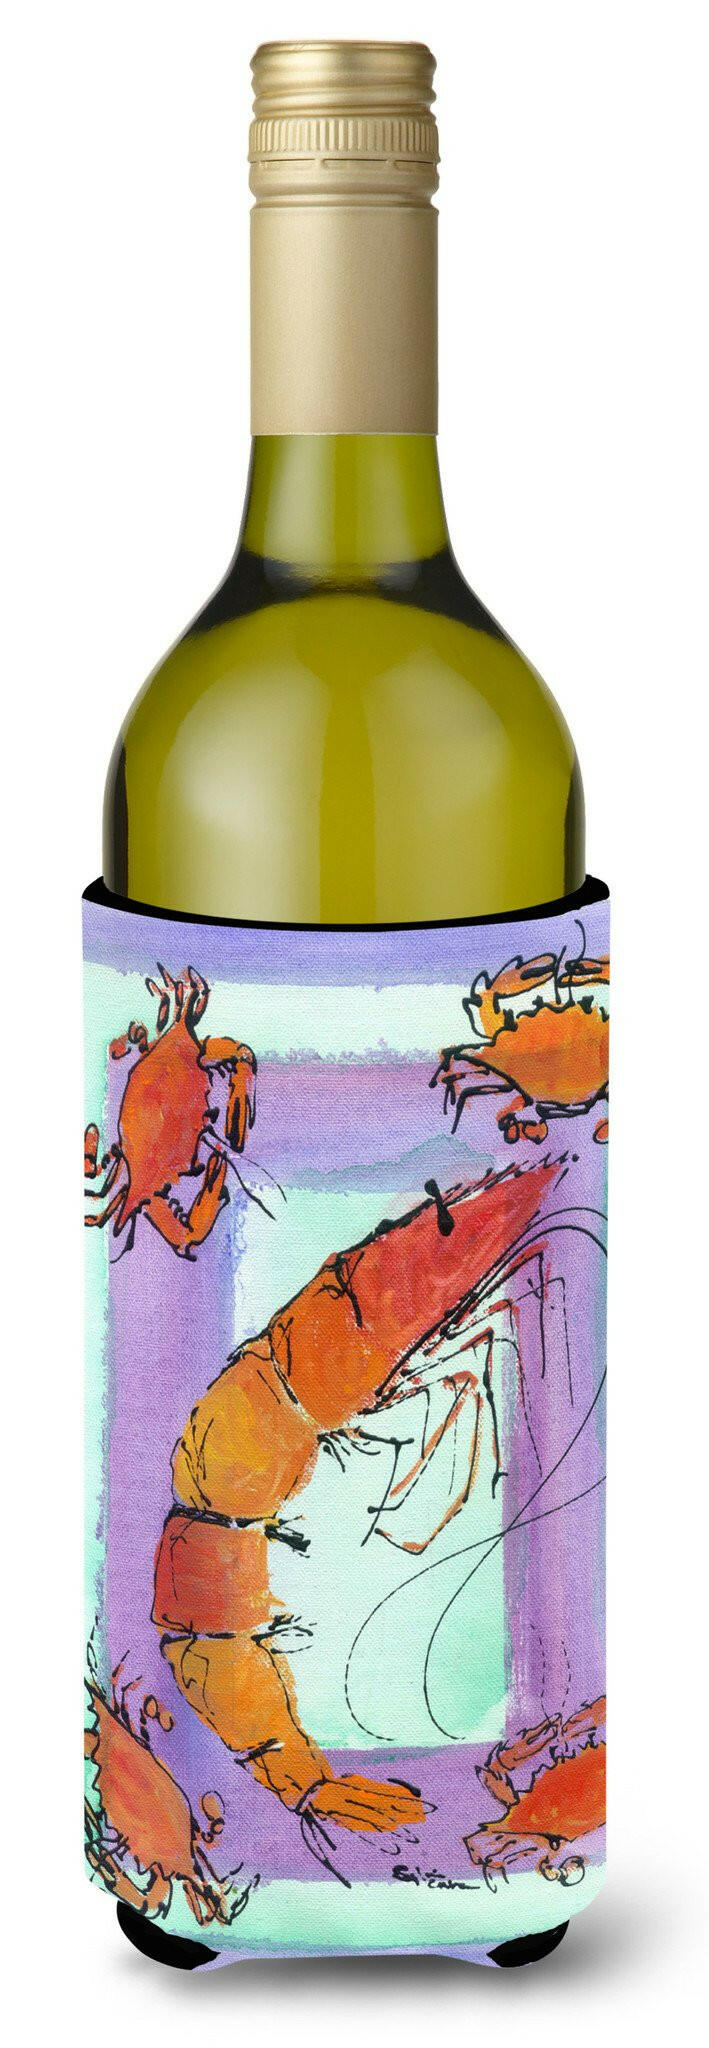 Shrimp and Crab Wine Bottle Beverage Insulator Beverage Insulator Hugger by Caroline's Treasures